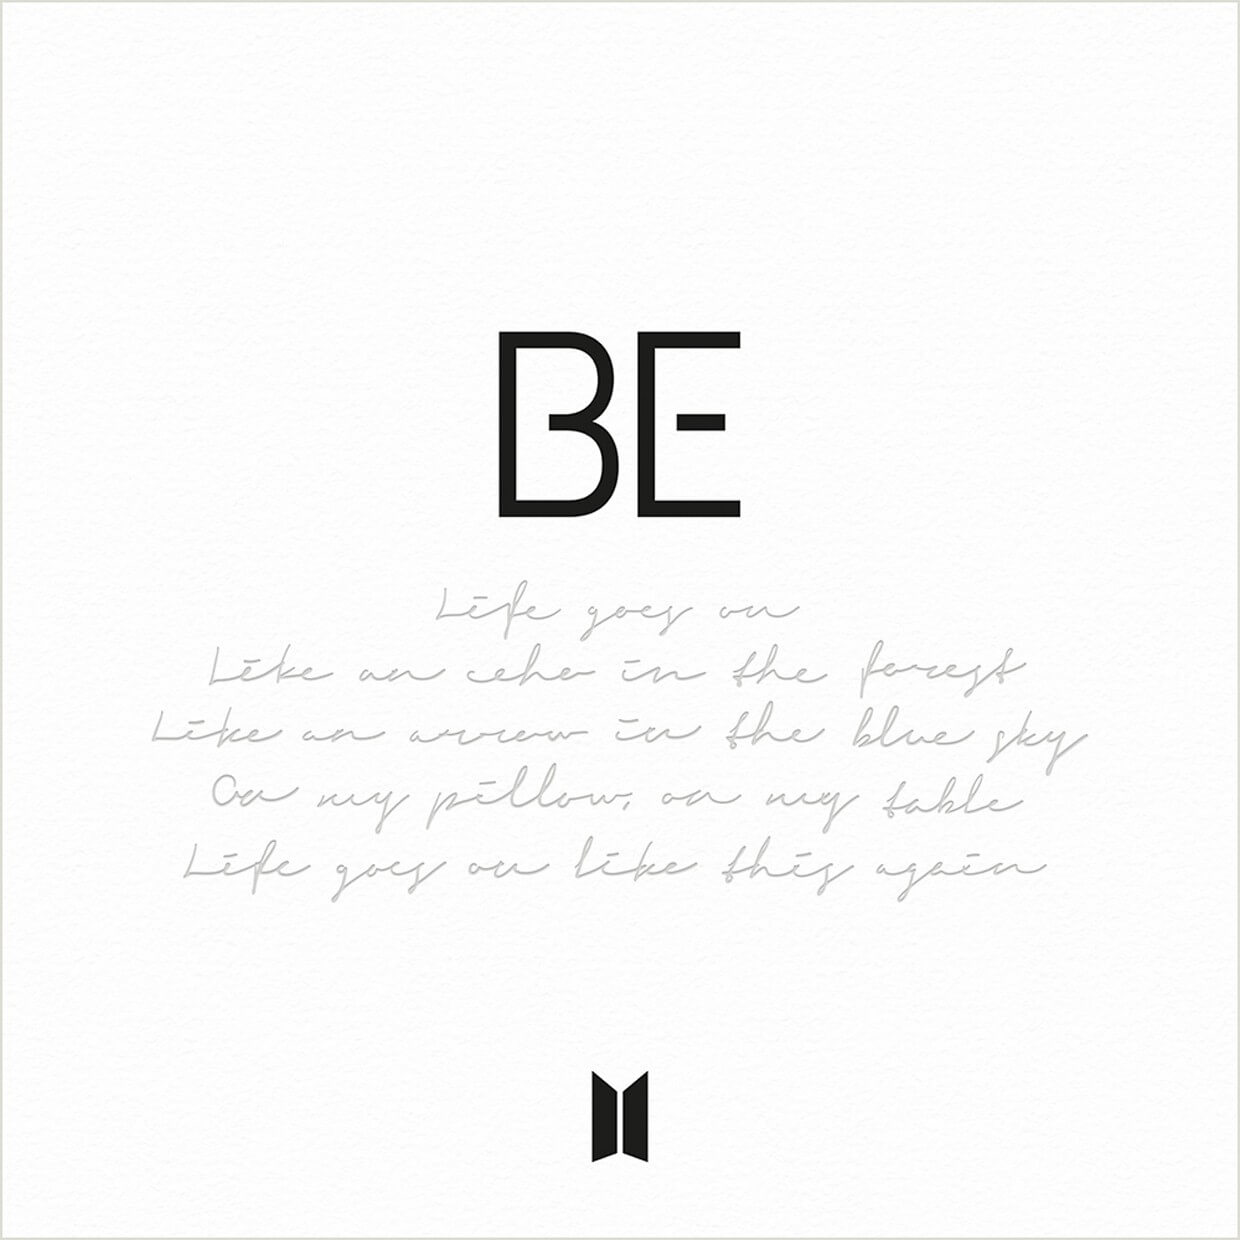 Portada de BE (Deluxe Edition), album especial de la boy band surcoreana BTS.